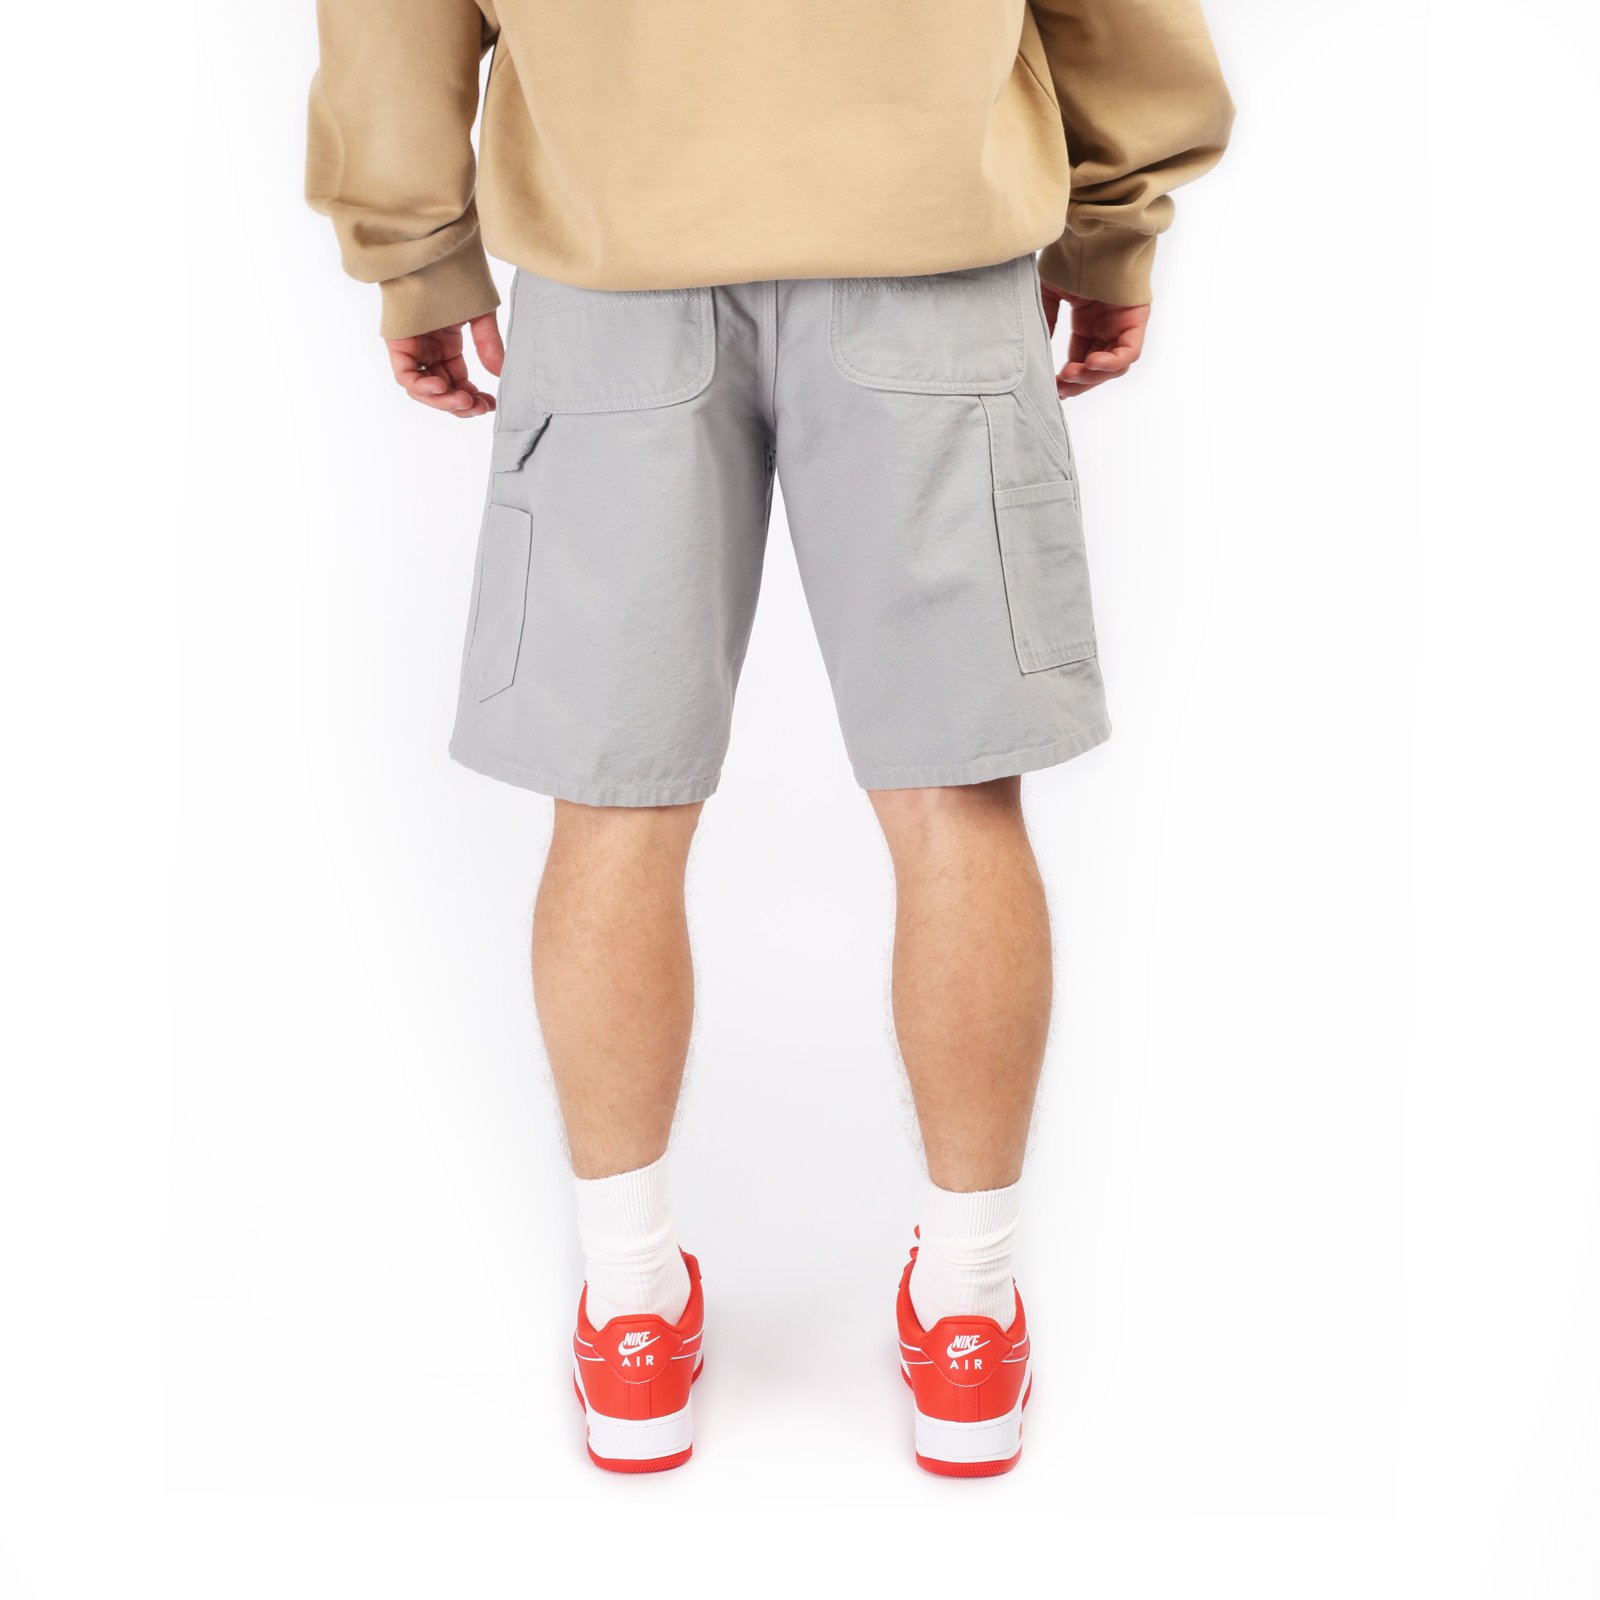 мужские серые шорты Carhartt WIP Single Knee Short I027942-marengo - цена, описание, фото 2